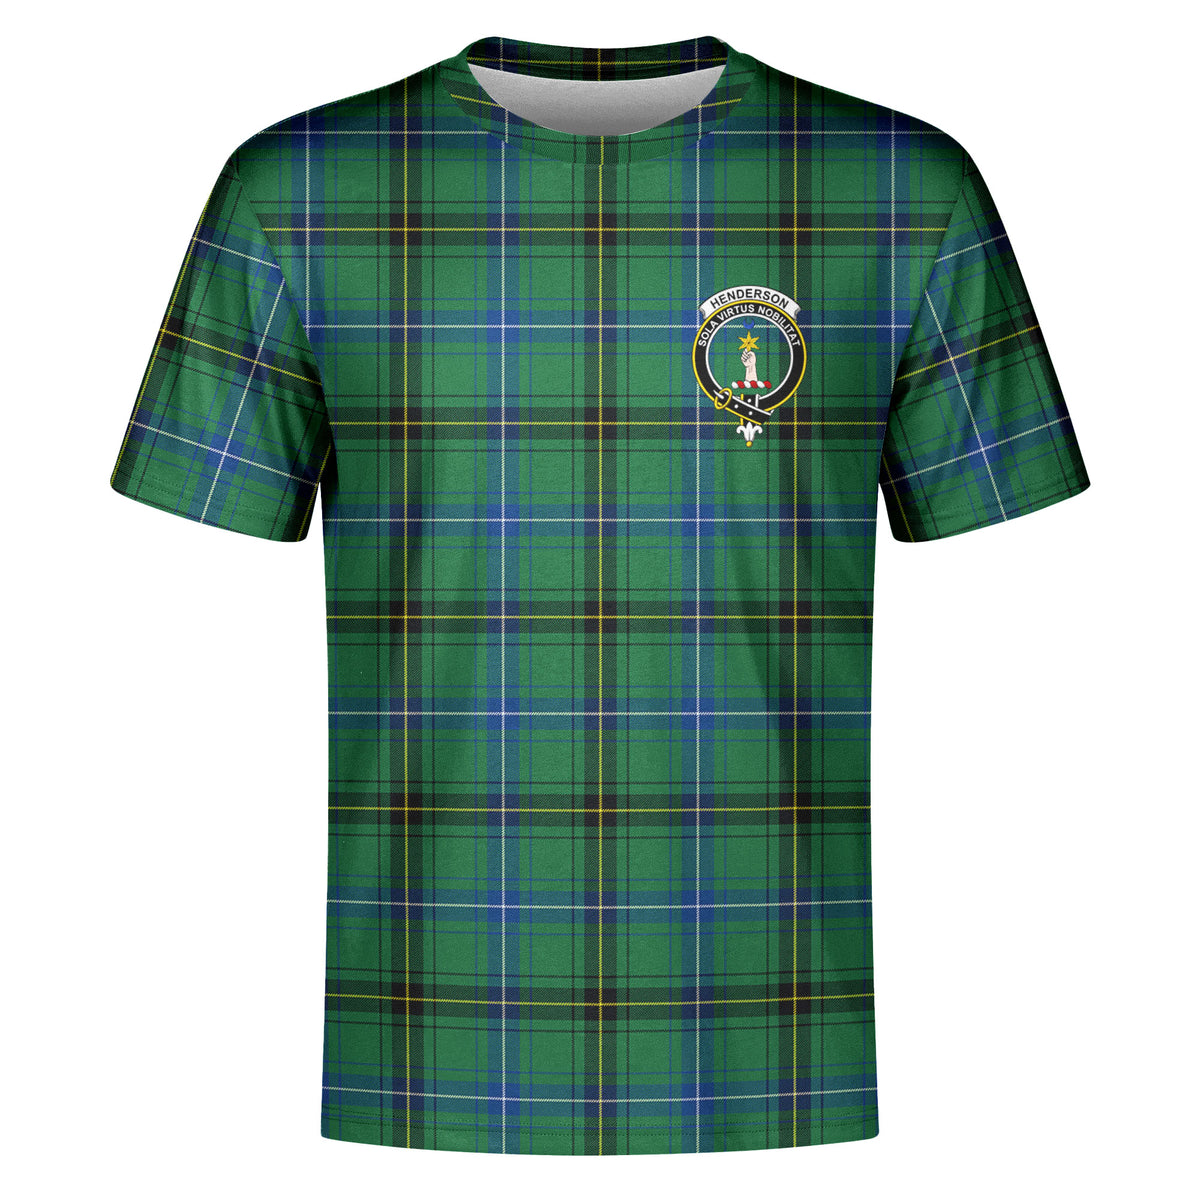 Henderson Ancient Tartan Crest T-shirt